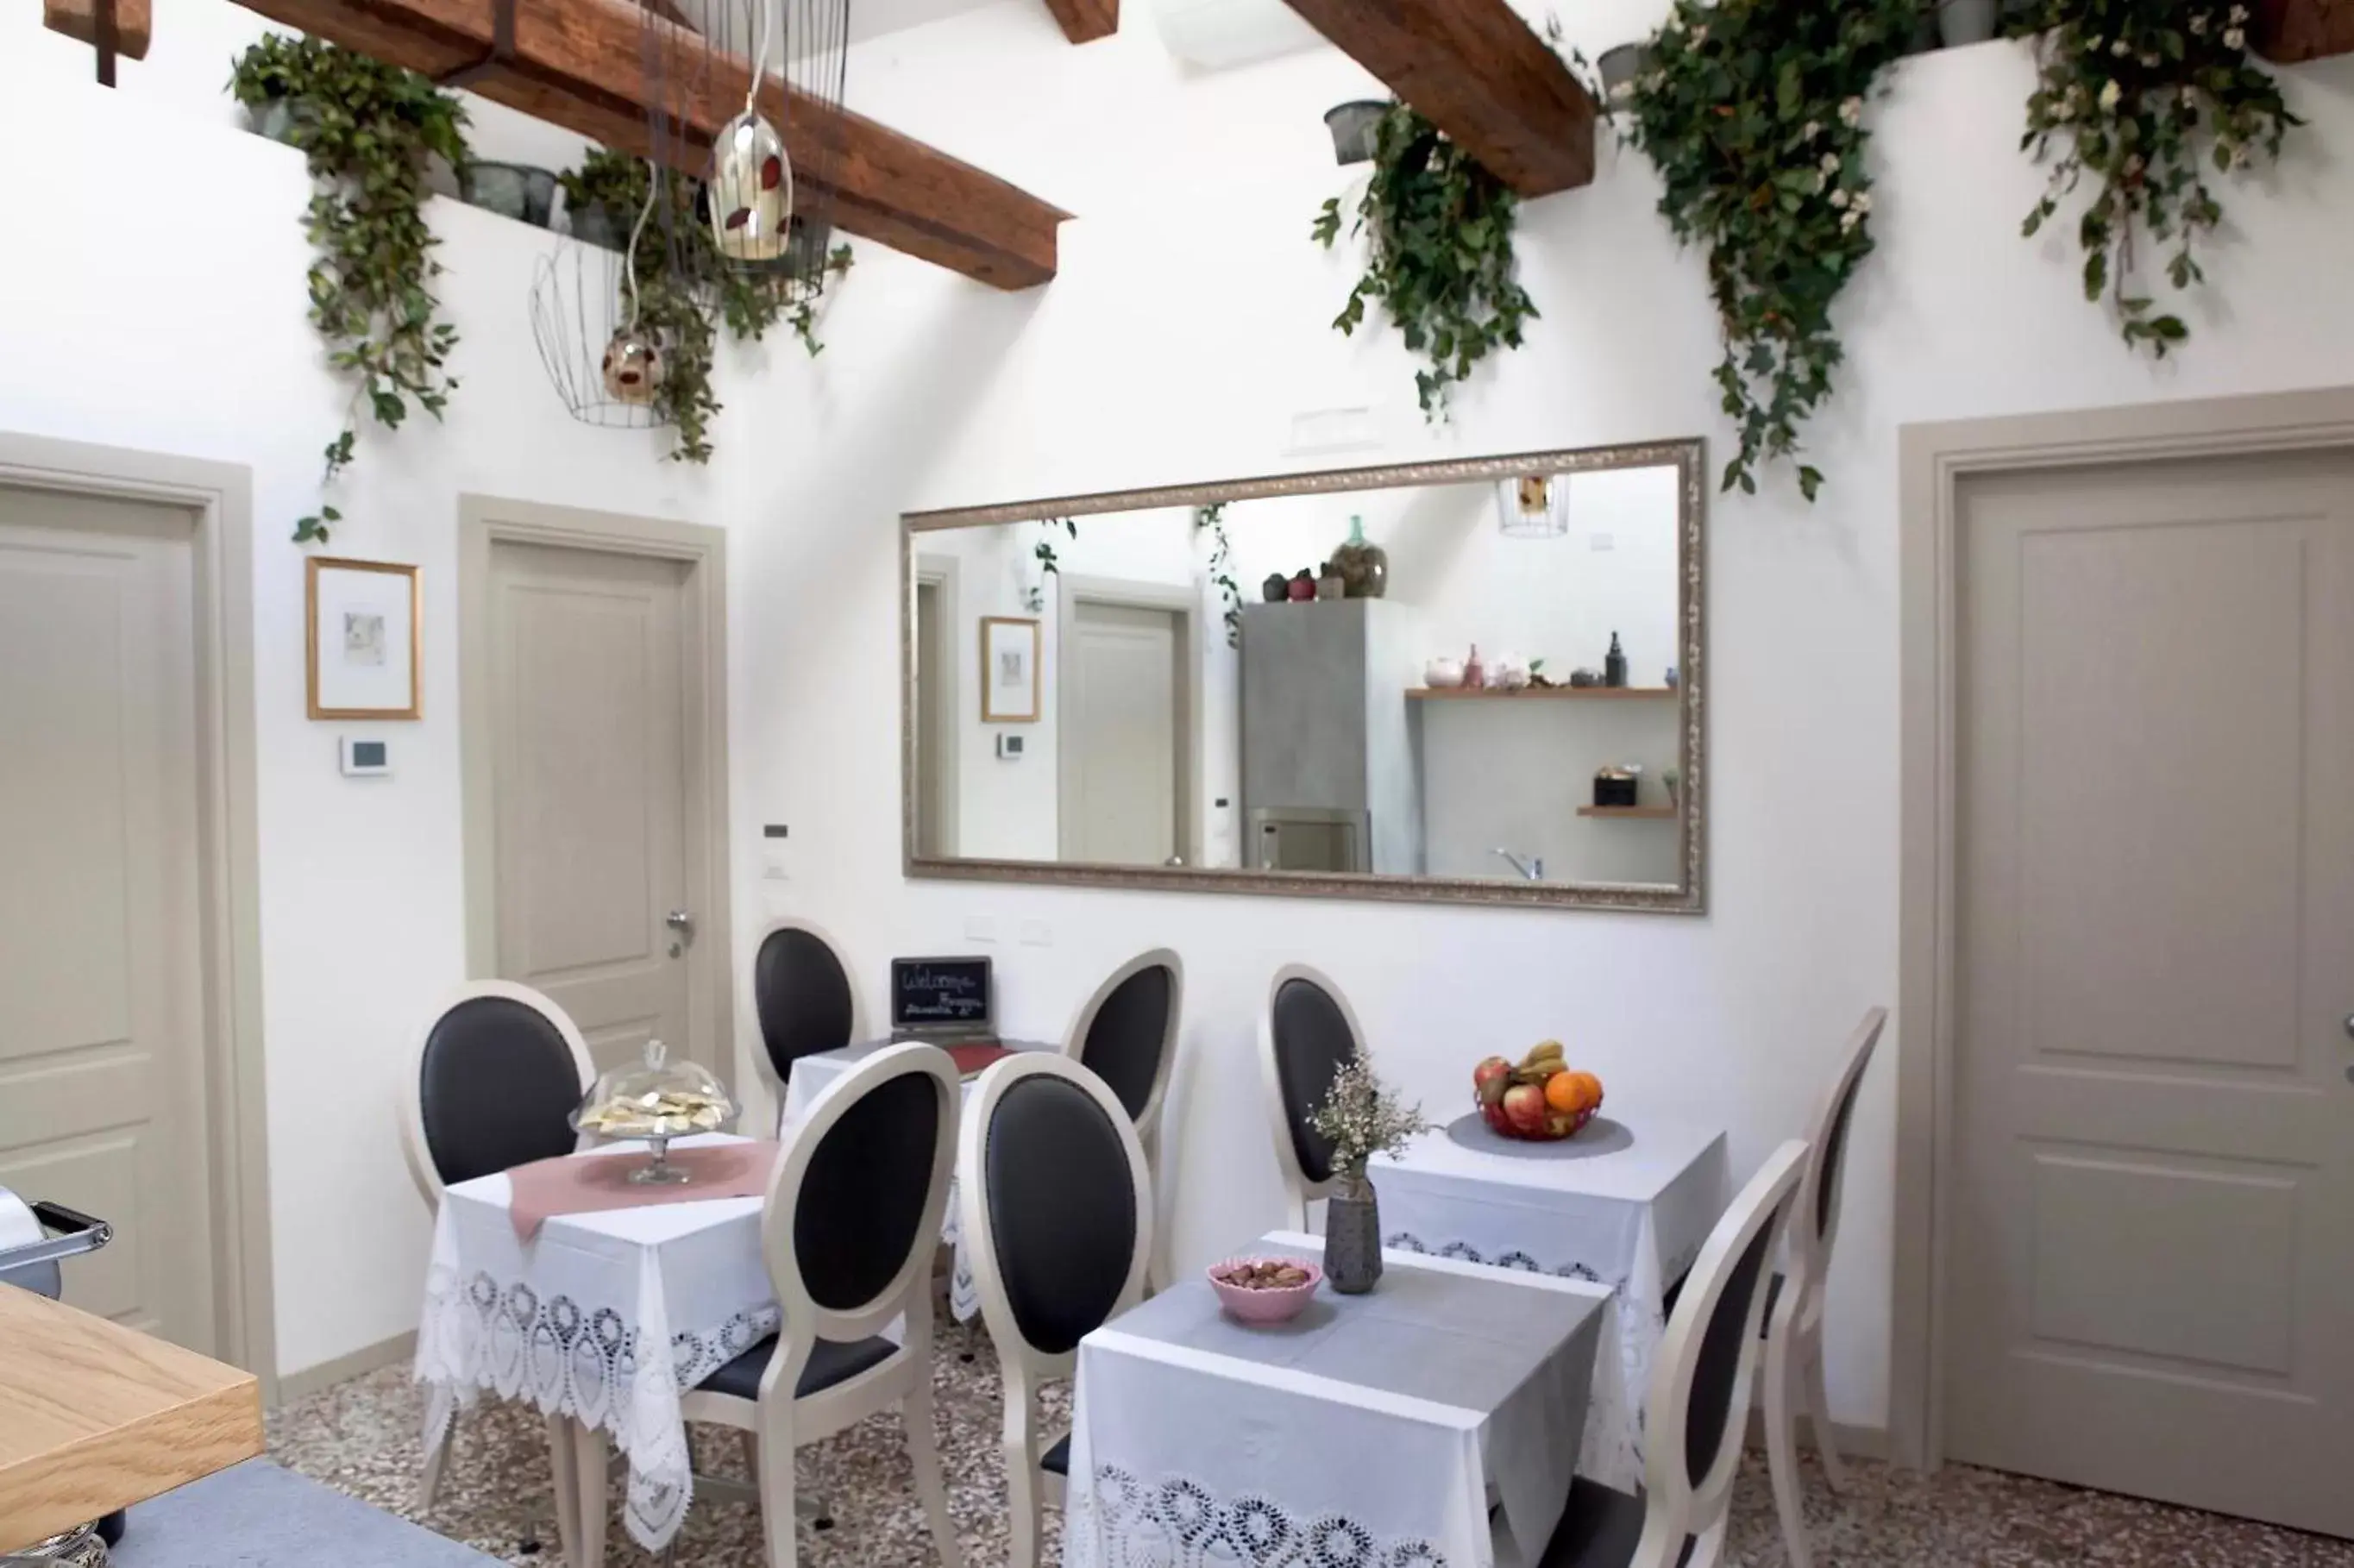 Seating area, Dining Area in B&B Al Pozzo di Luce